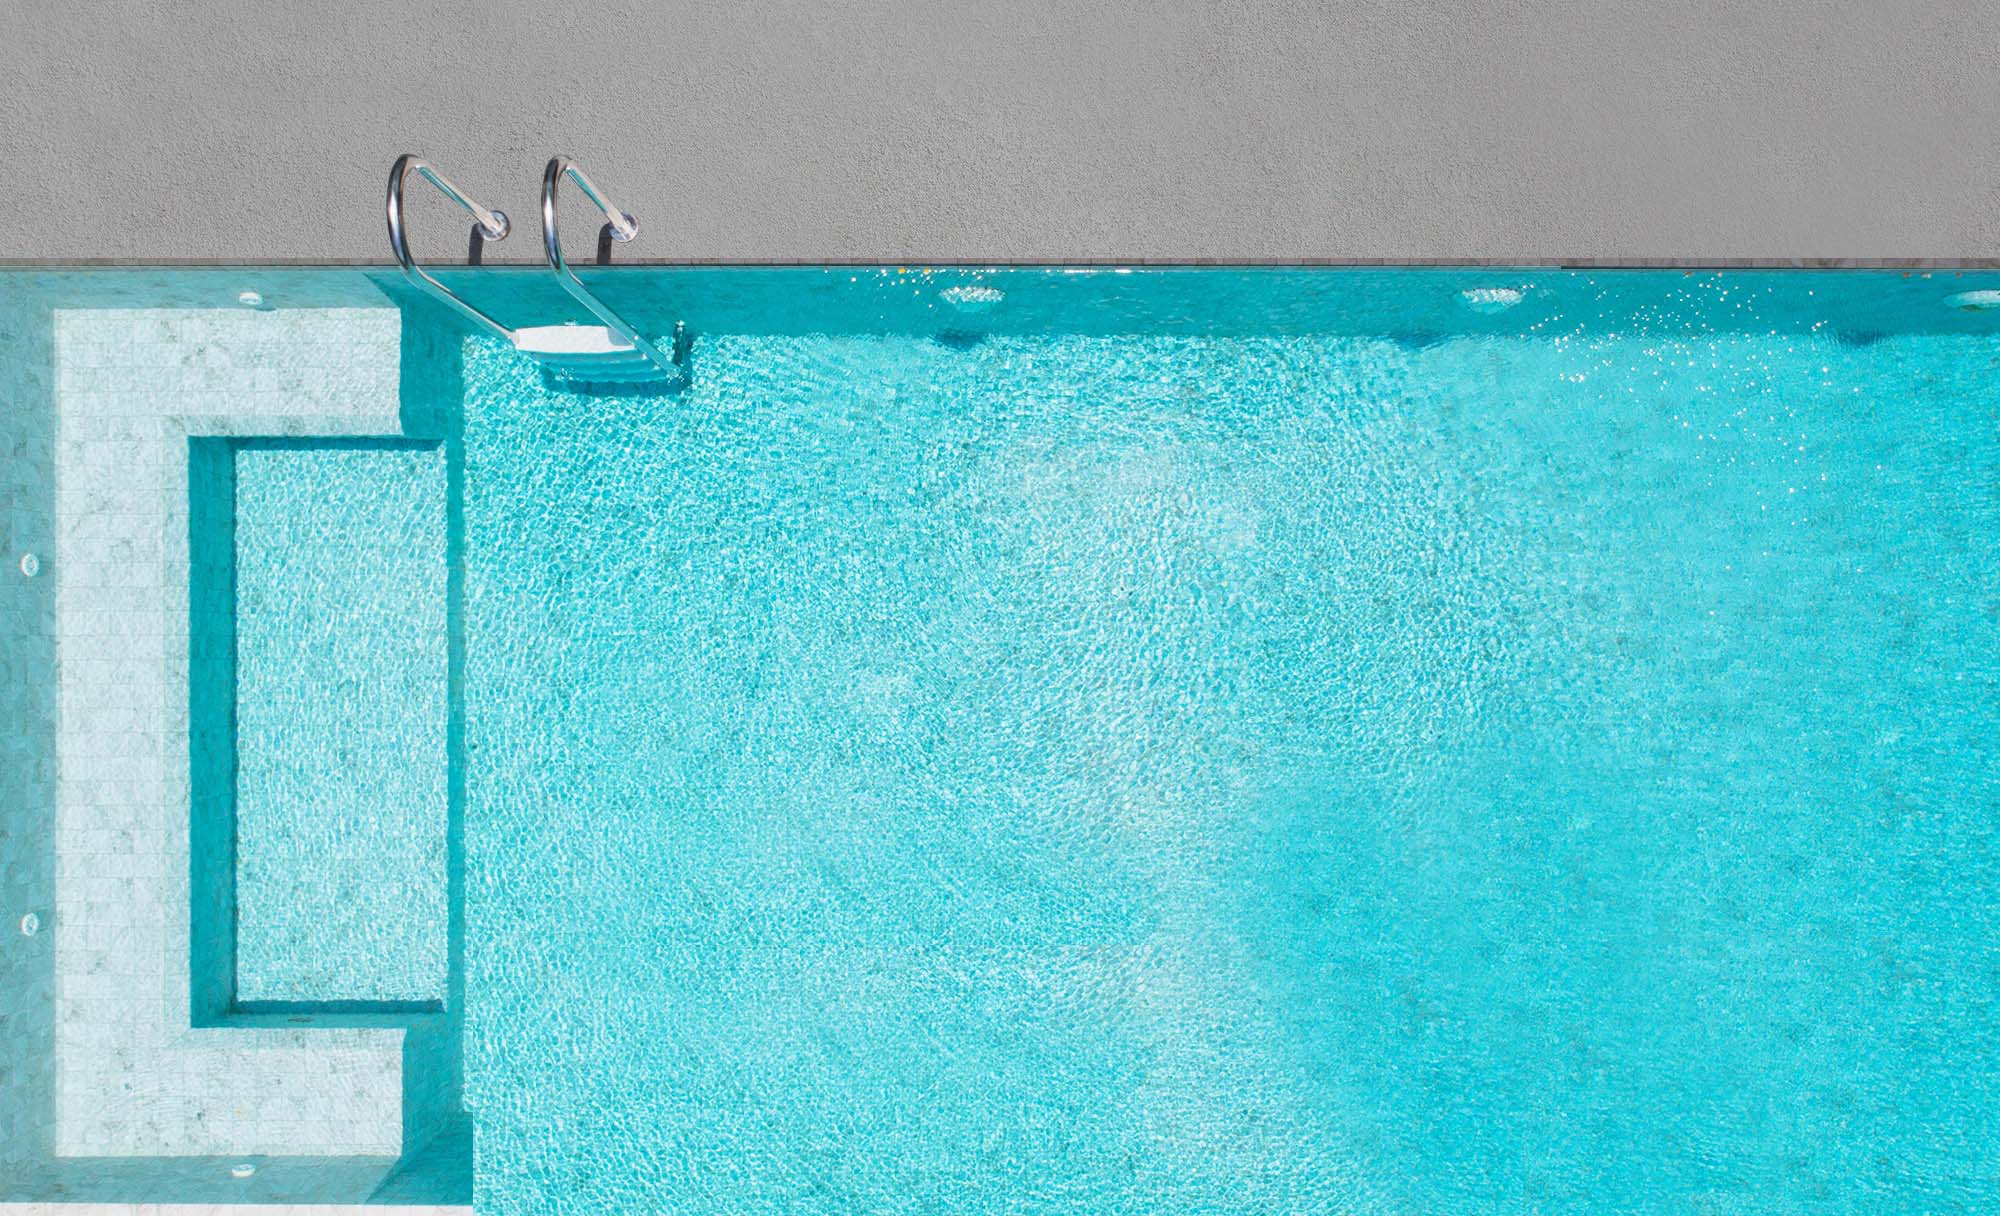 Waterproofing and Pool Deck Resurfacing in Los Angeles